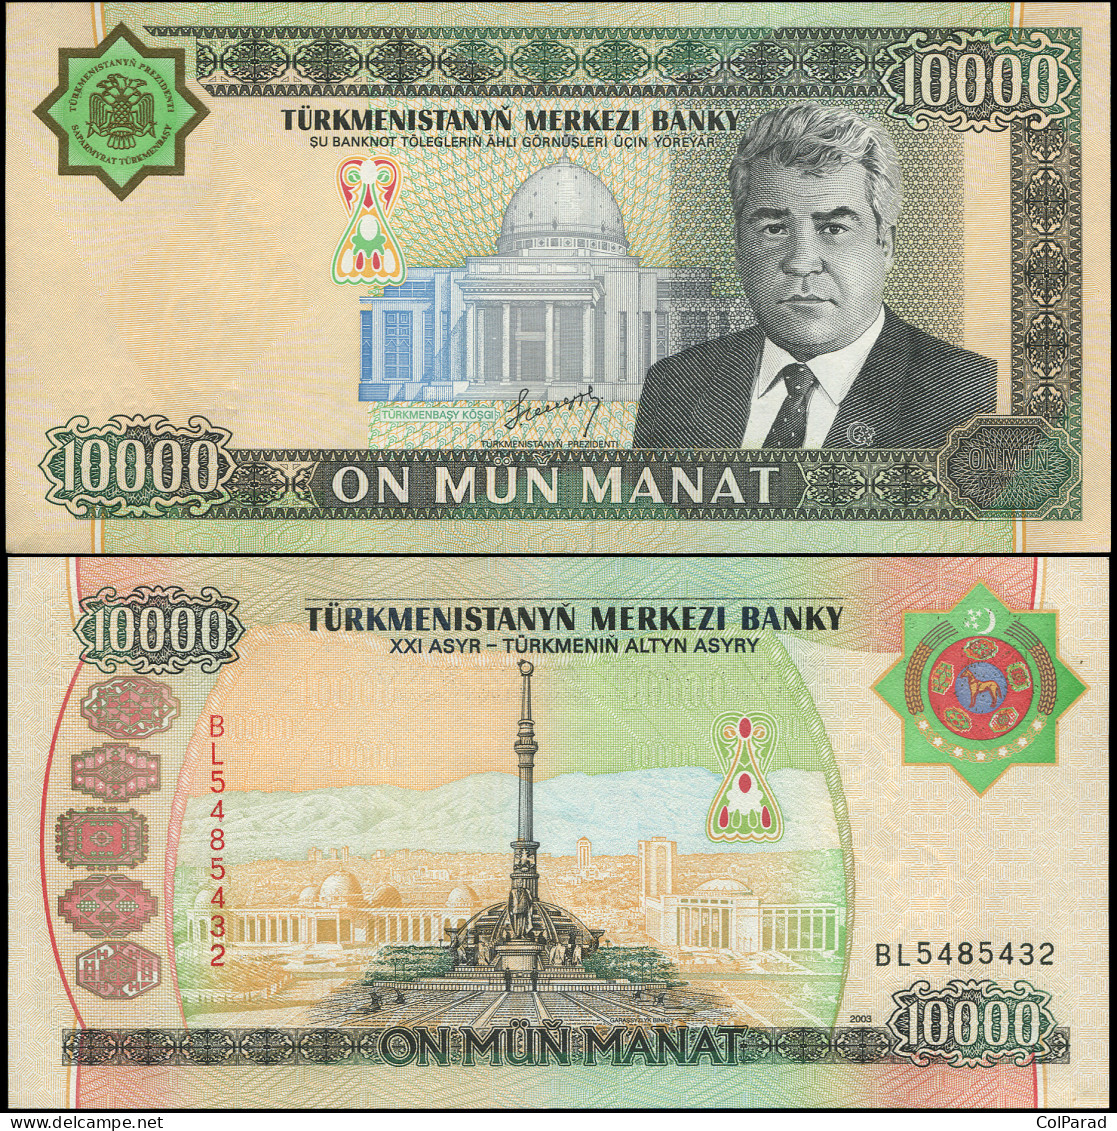 TURKMENISTAN 10000 MANAT - 2003 - Paper Unc - P.15a Banknote - Turkmenistán